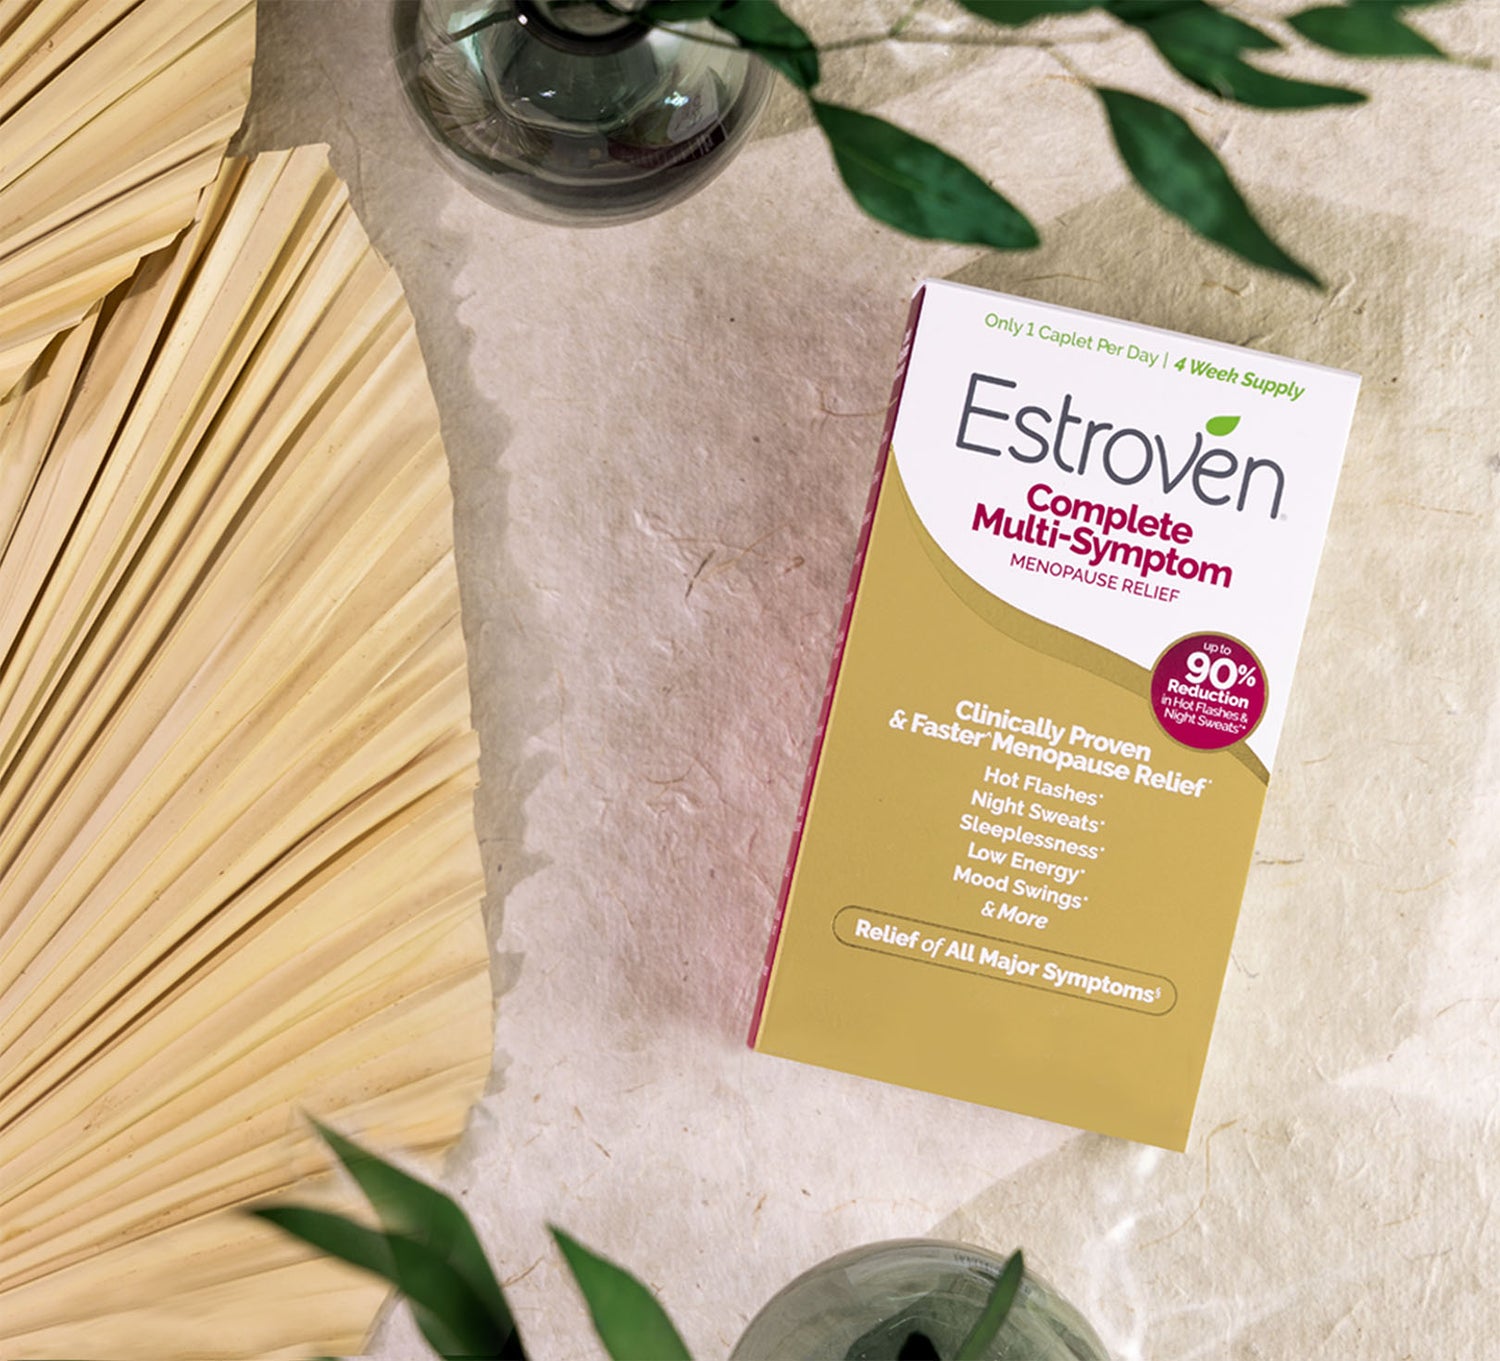 Estroven Complete Multi-Symptom box top view lifestyle image